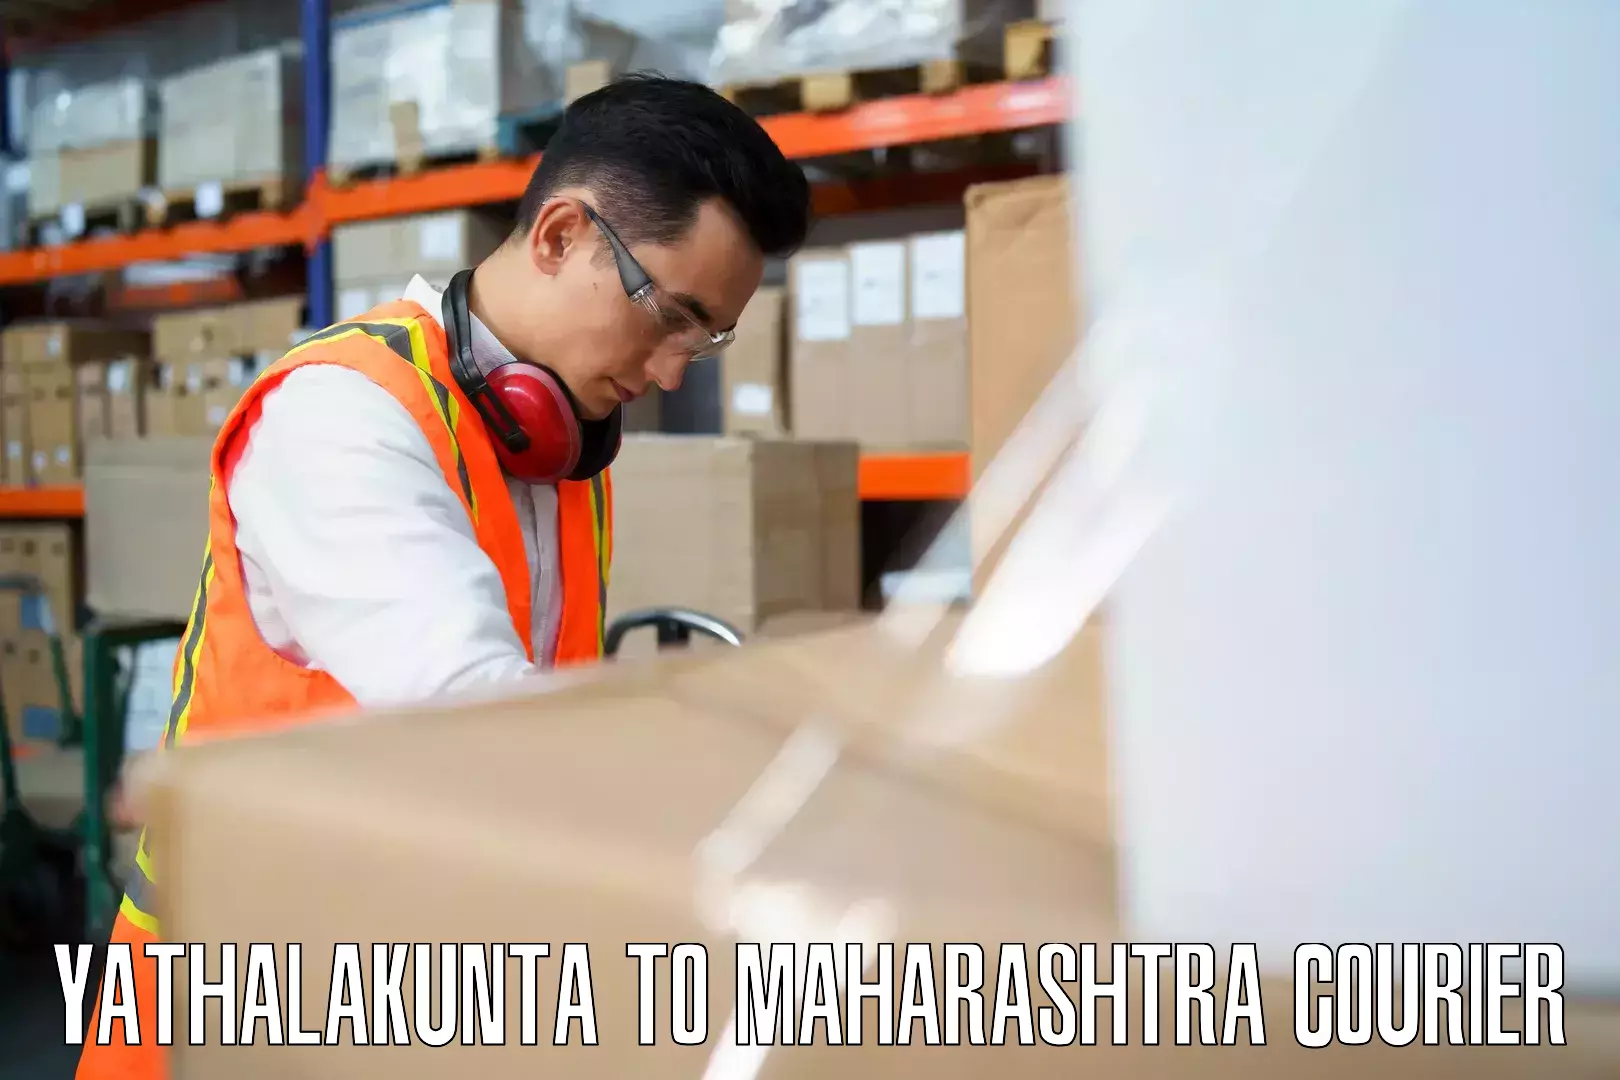 Baggage courier insights Yathalakunta to Akkalkuva